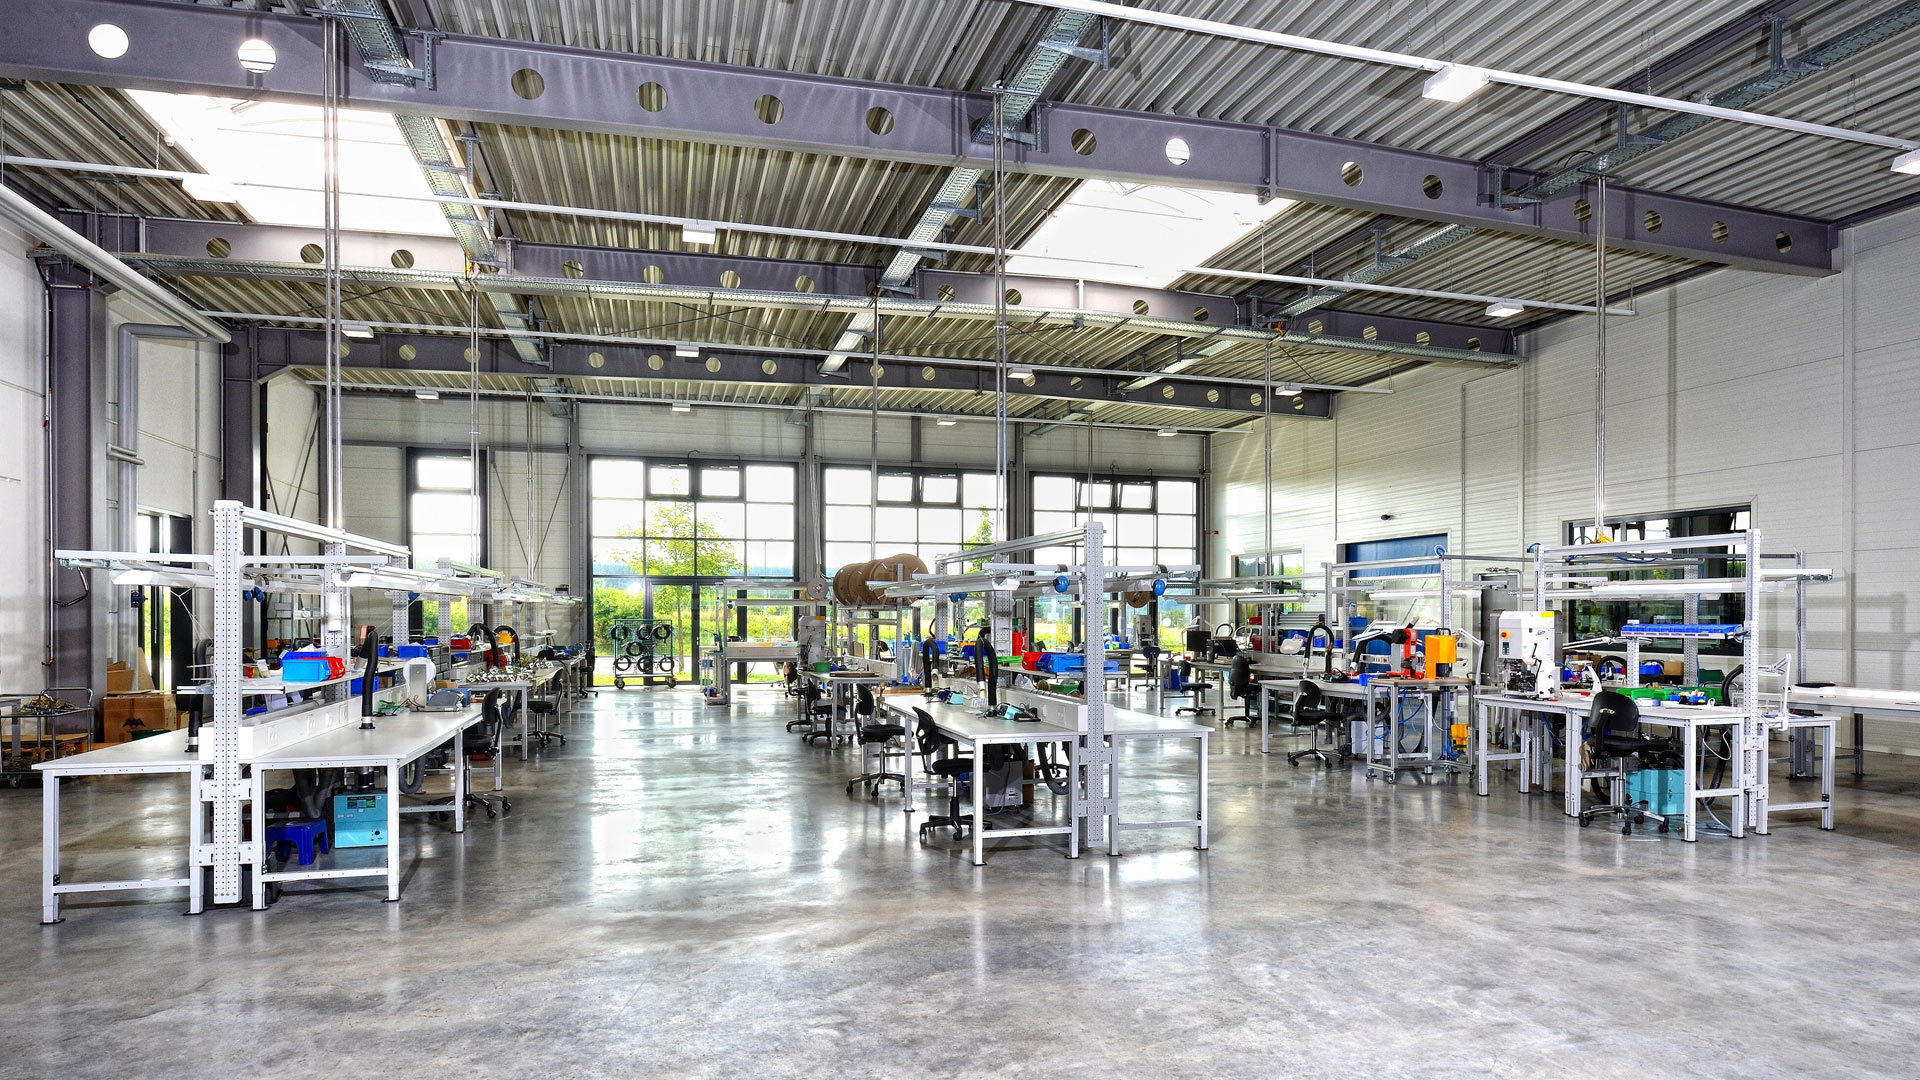 Arbeitsplätze in einer leeren Industriehalle | picture alliance / imageBROKER